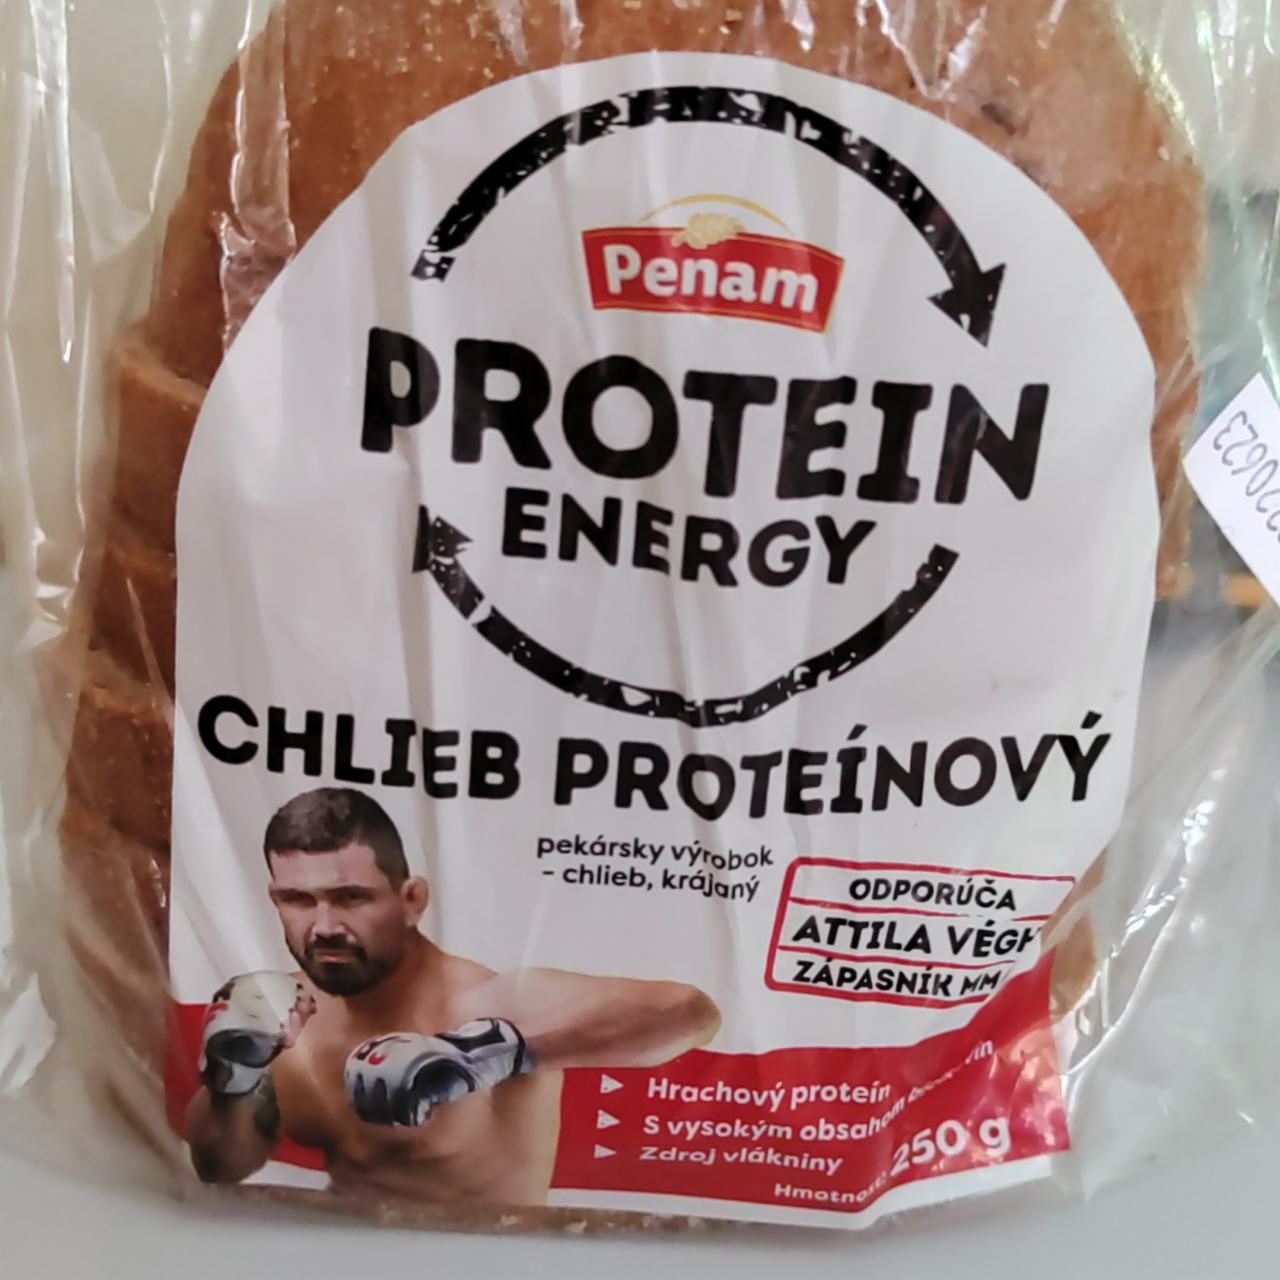 Fotografie - Protein energy chlieb proteinový Penam